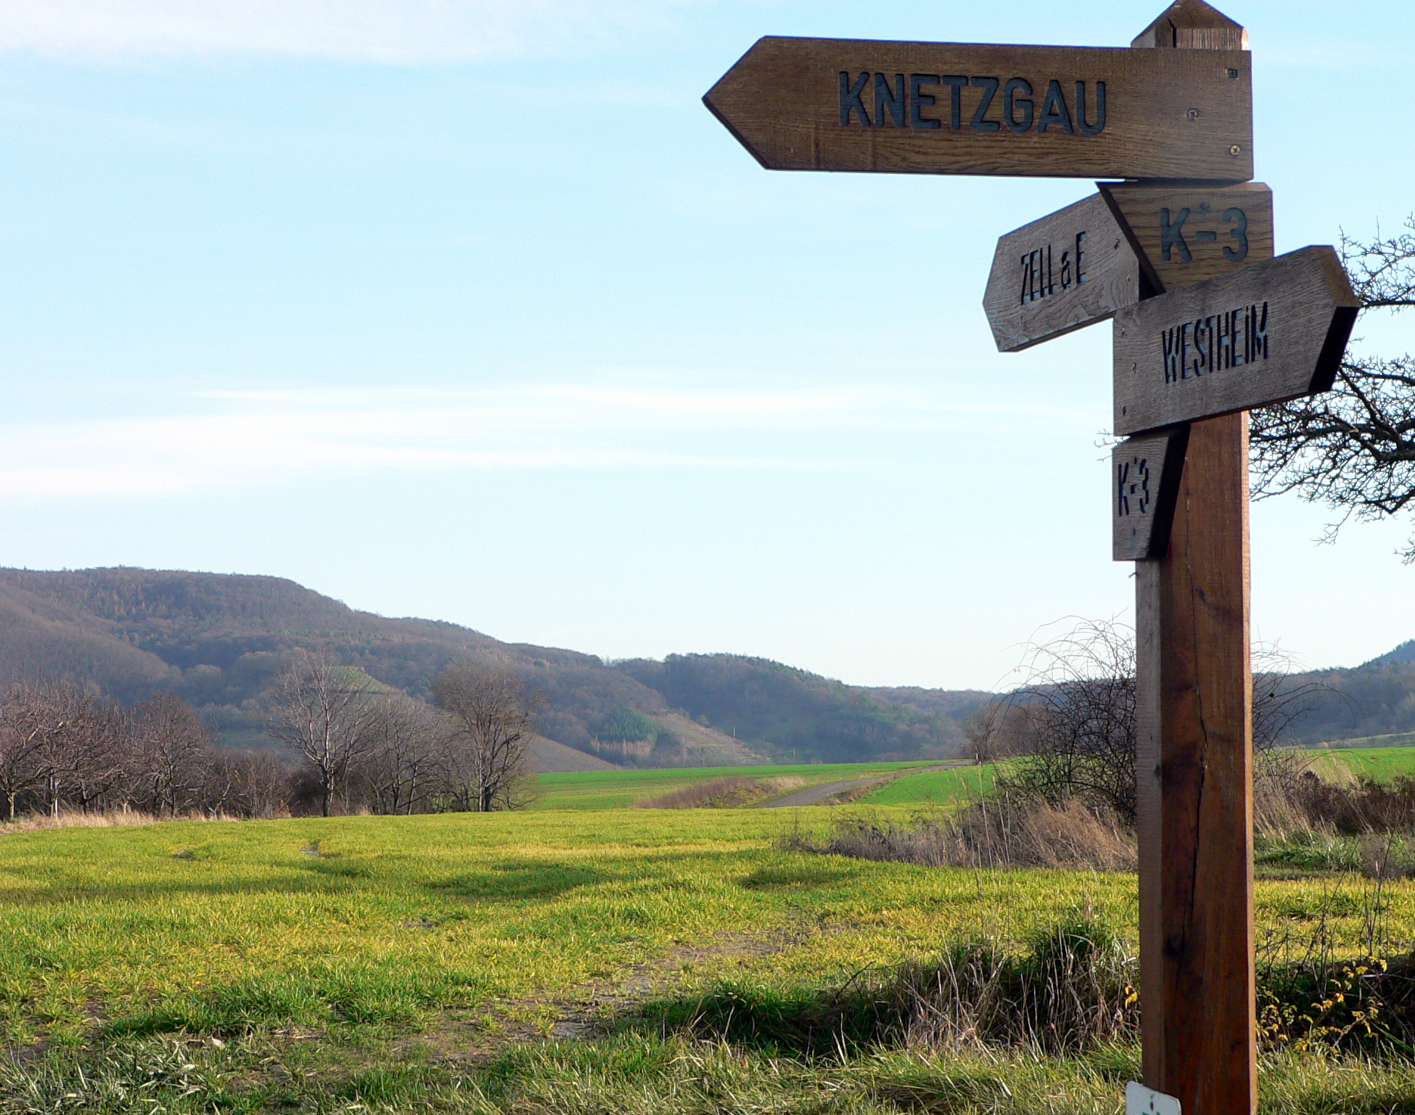 Wegweiser mit dem Schild "Knetzgau" in einer LAndschaft mit Feldern, Sträuchen und Hügeln